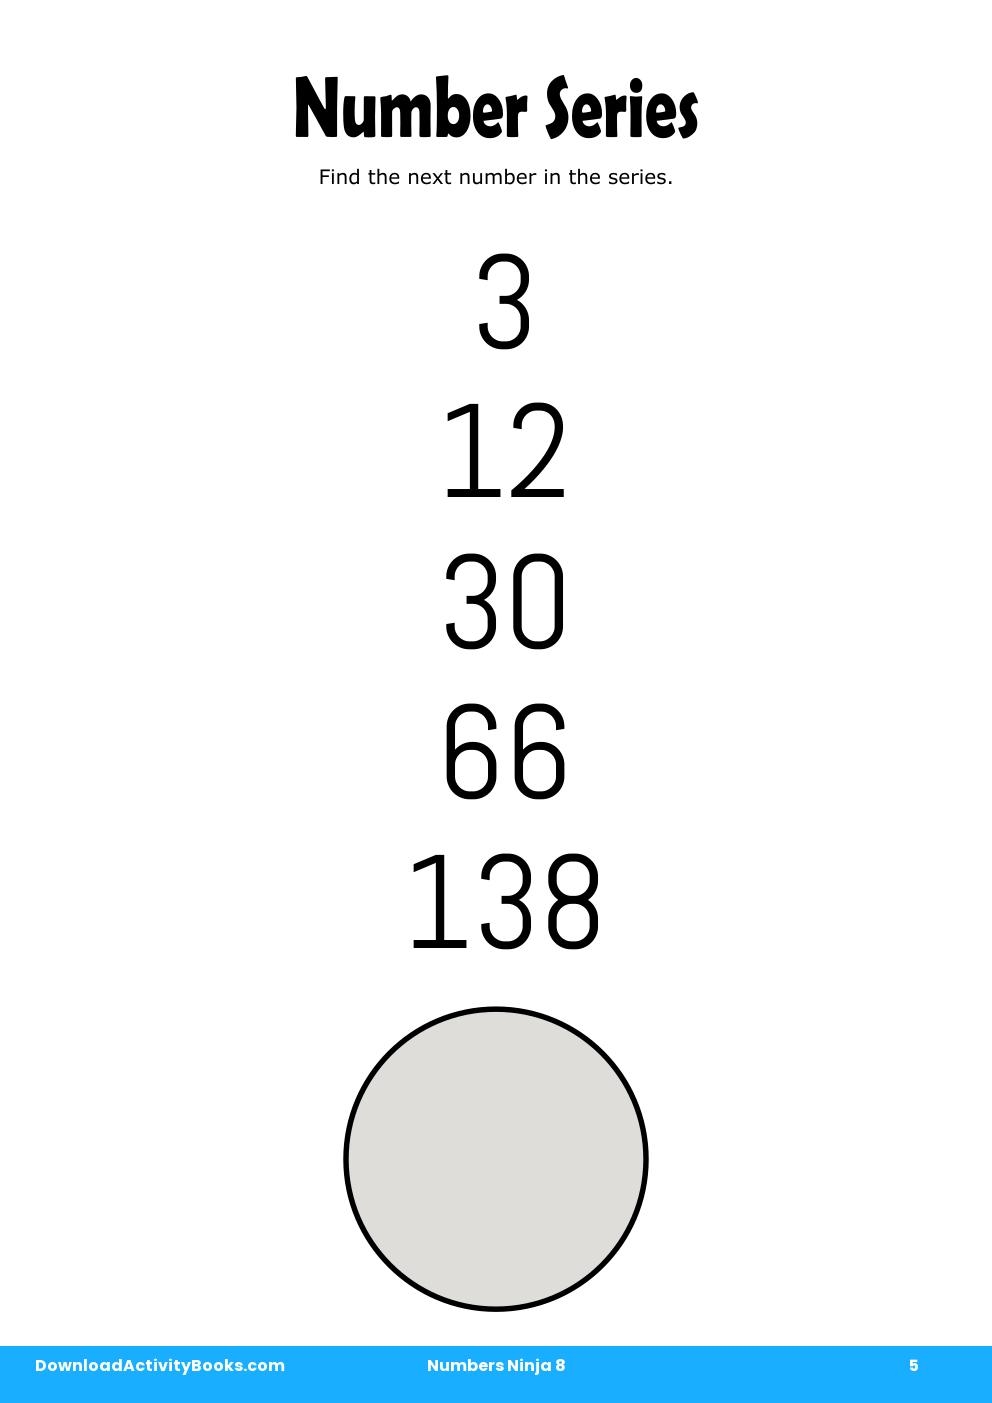 Number Series in Numbers Ninja 8